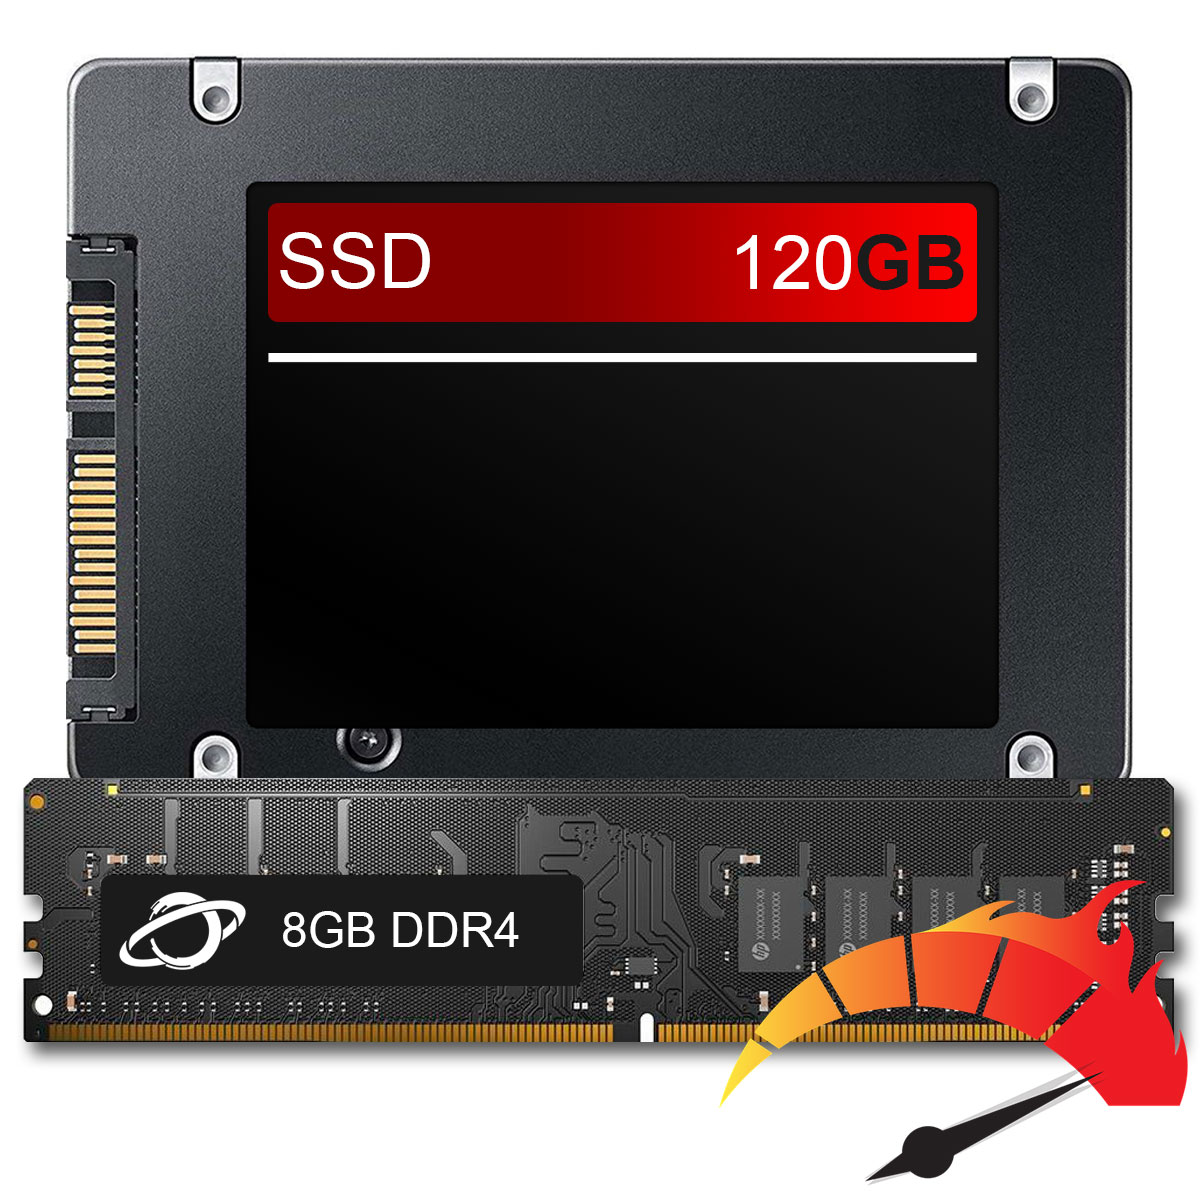 Kit Upgrade de alto desempenho - SSD 120GB + Memória 8GB DDR4, aumento da velocidade do PC em até 10x